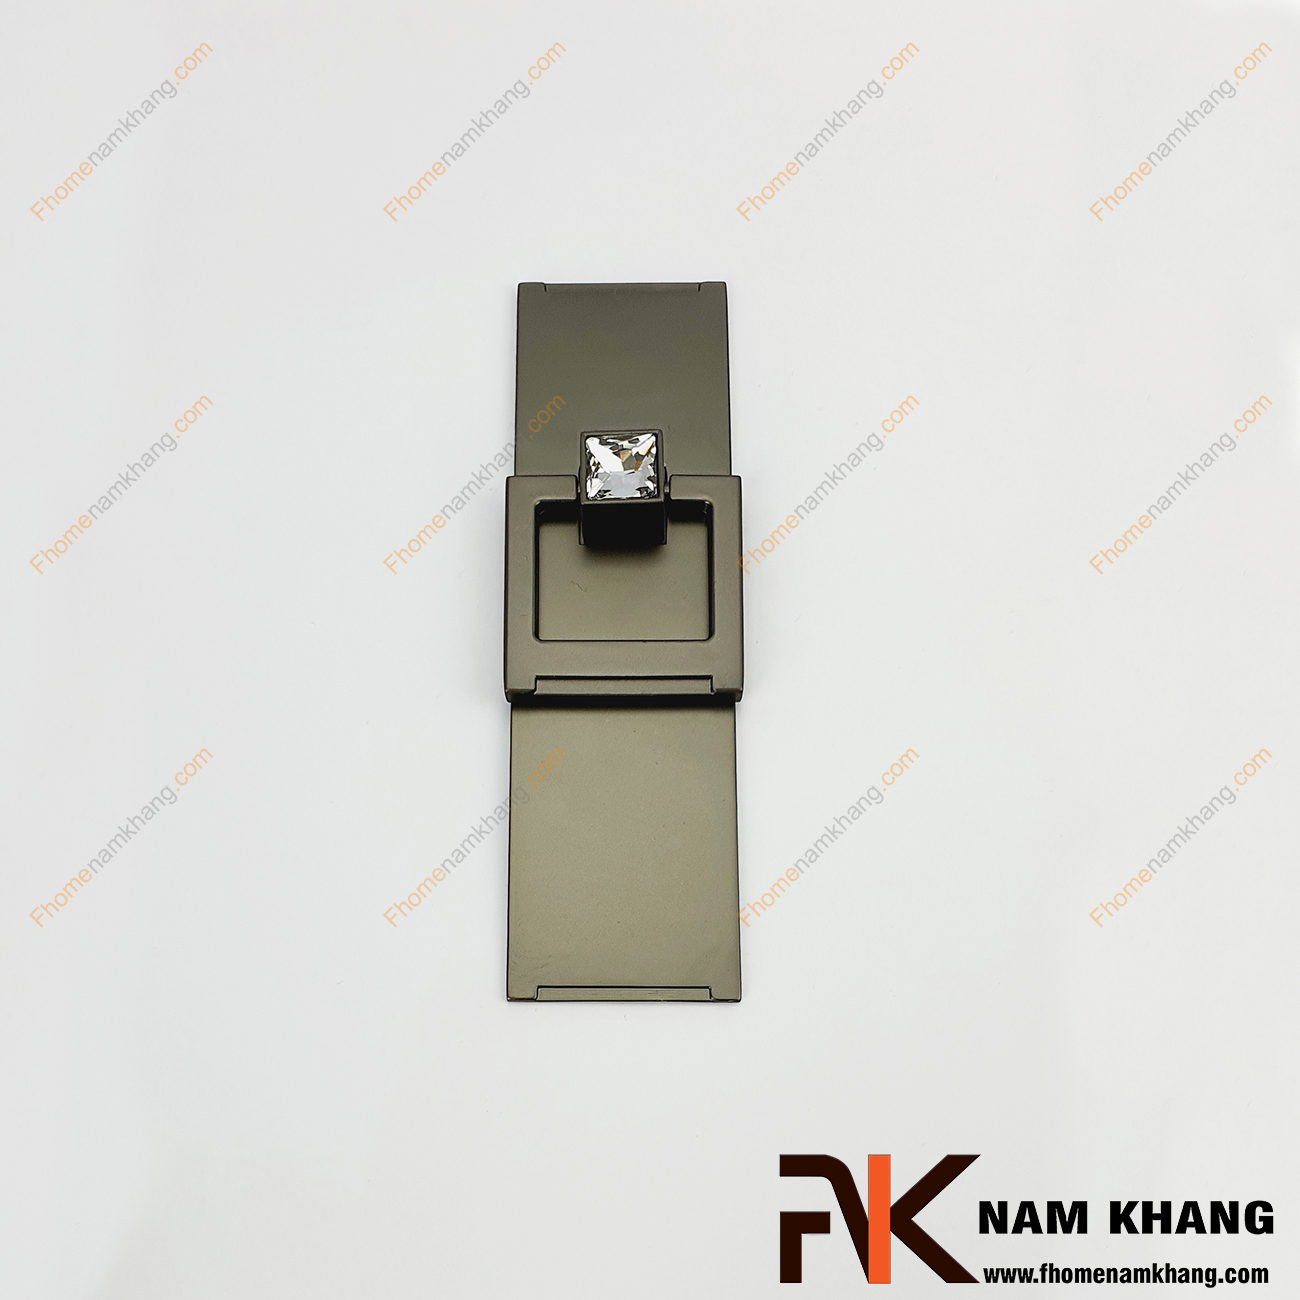 Núm cửa tủ kết hợp đá pha lê NK439-XVD tại FHomeNamKhang rất nhiều khuôn dạng với các dạng pha lê hình dáng đa dạng và cao cấp.